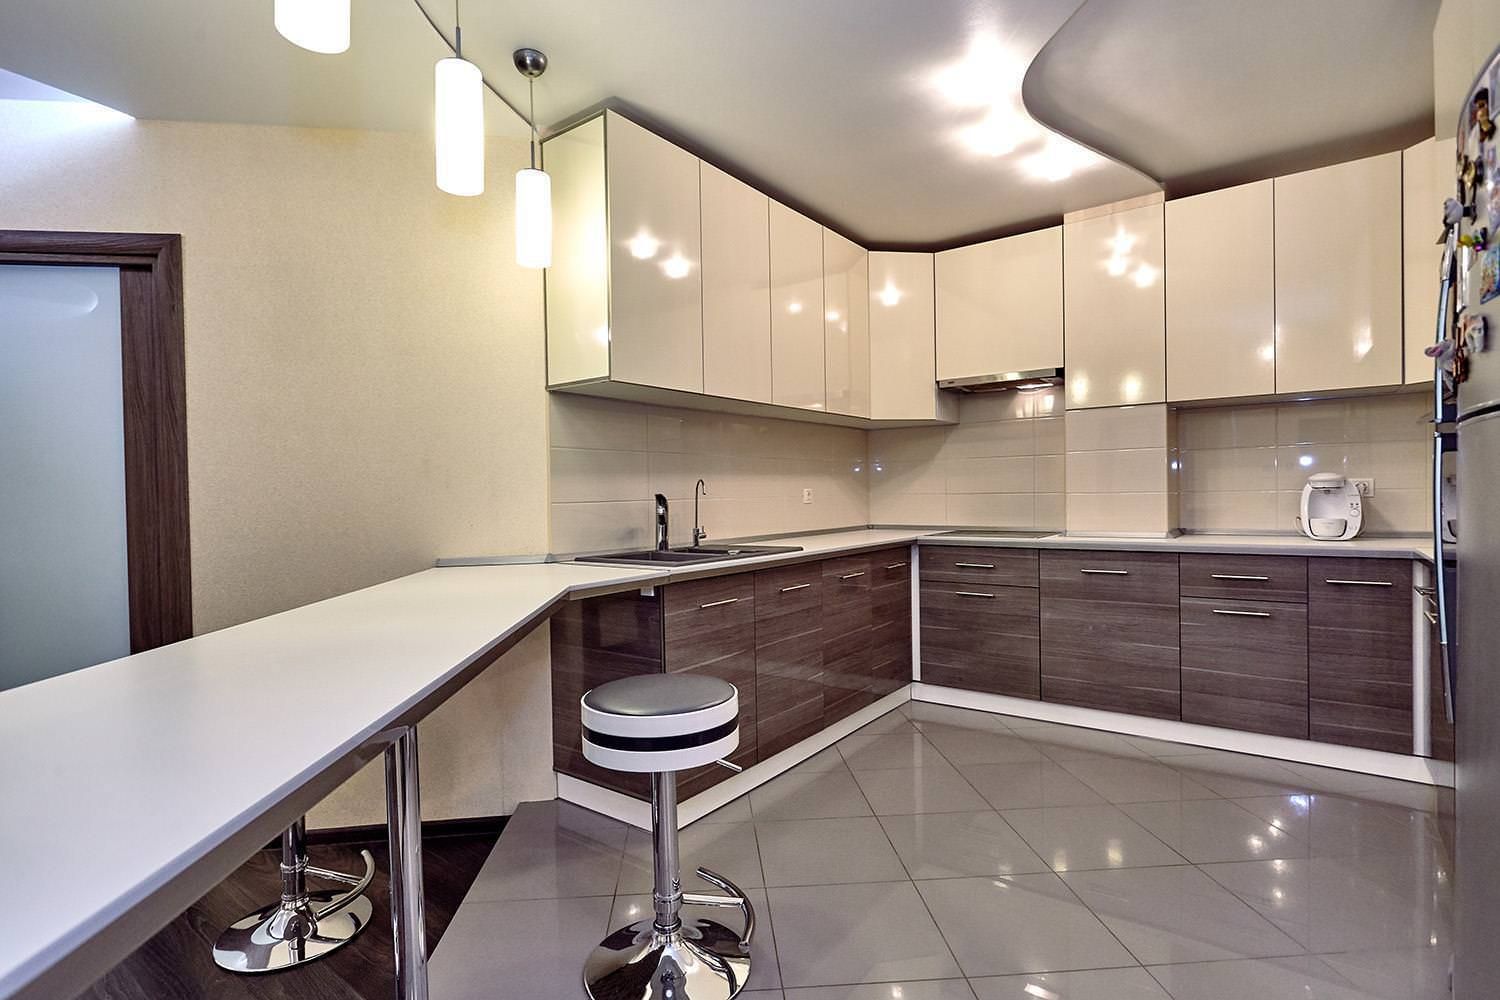 Кухня-гостиная 12 кв. м. – планировки, реальные фото и идеи дизайна